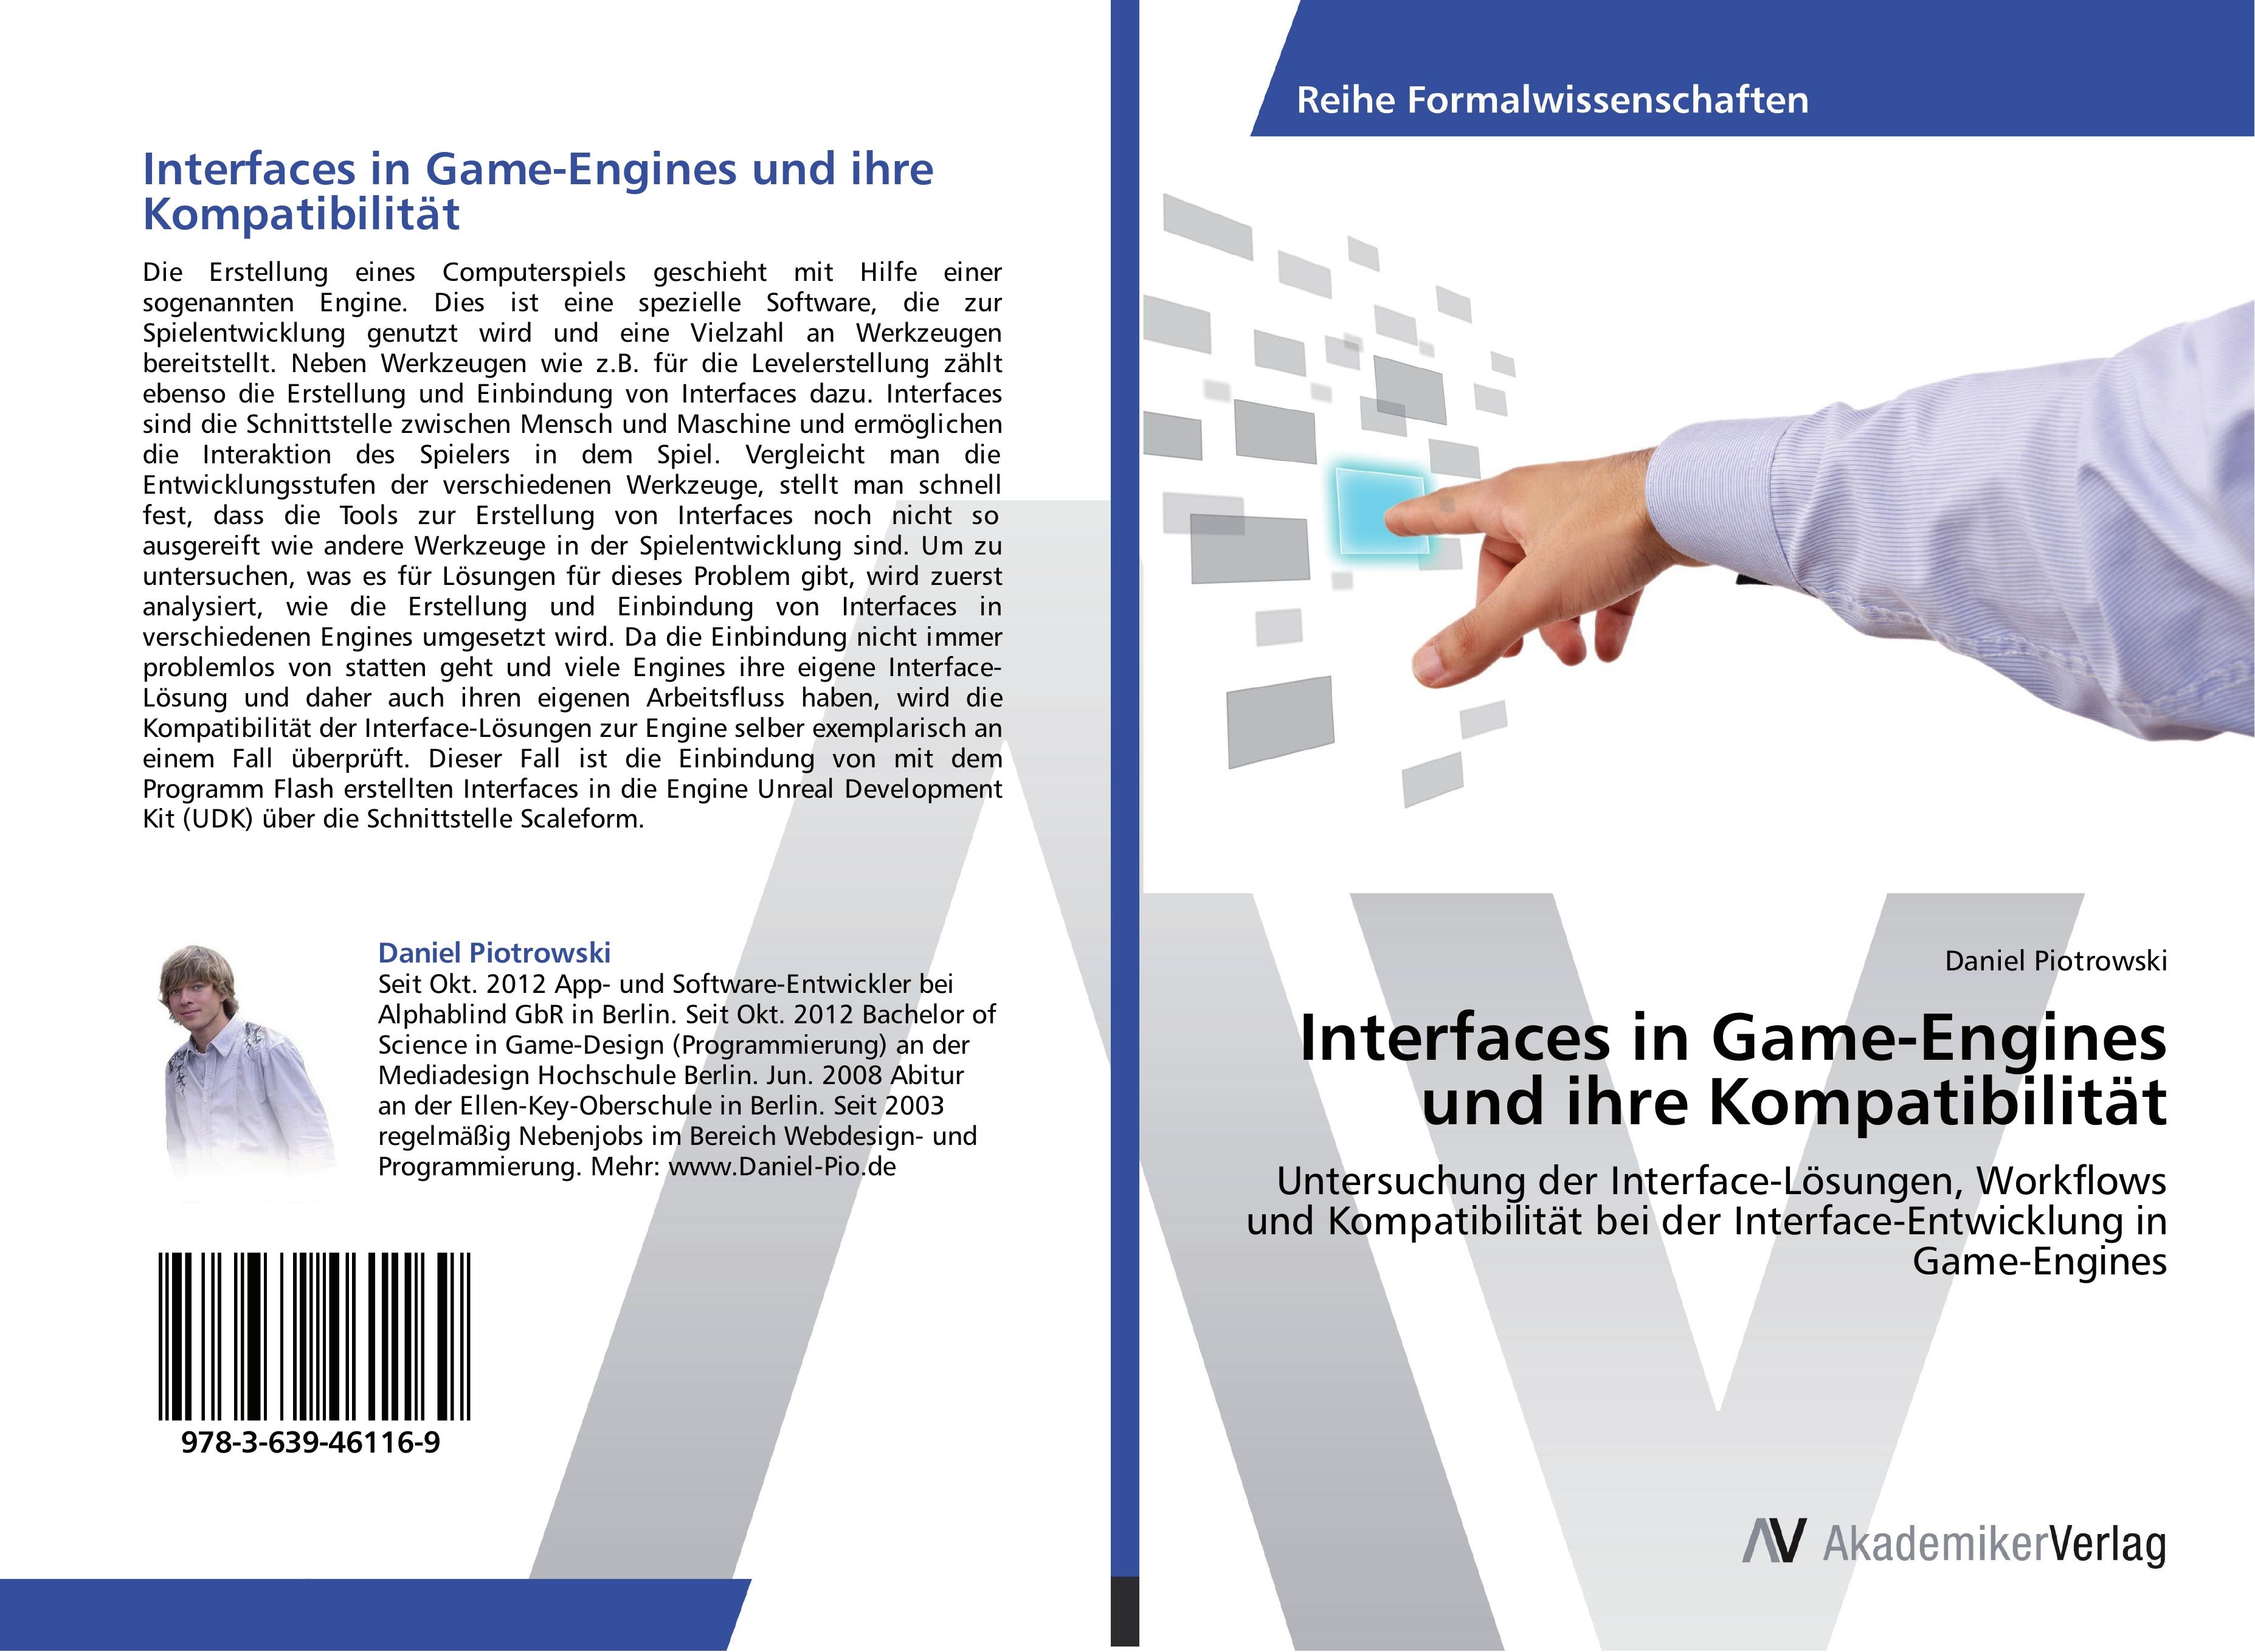 Interfaces in Game-Engines und ihre Kompatibilitaet - Daniel Piotrowski